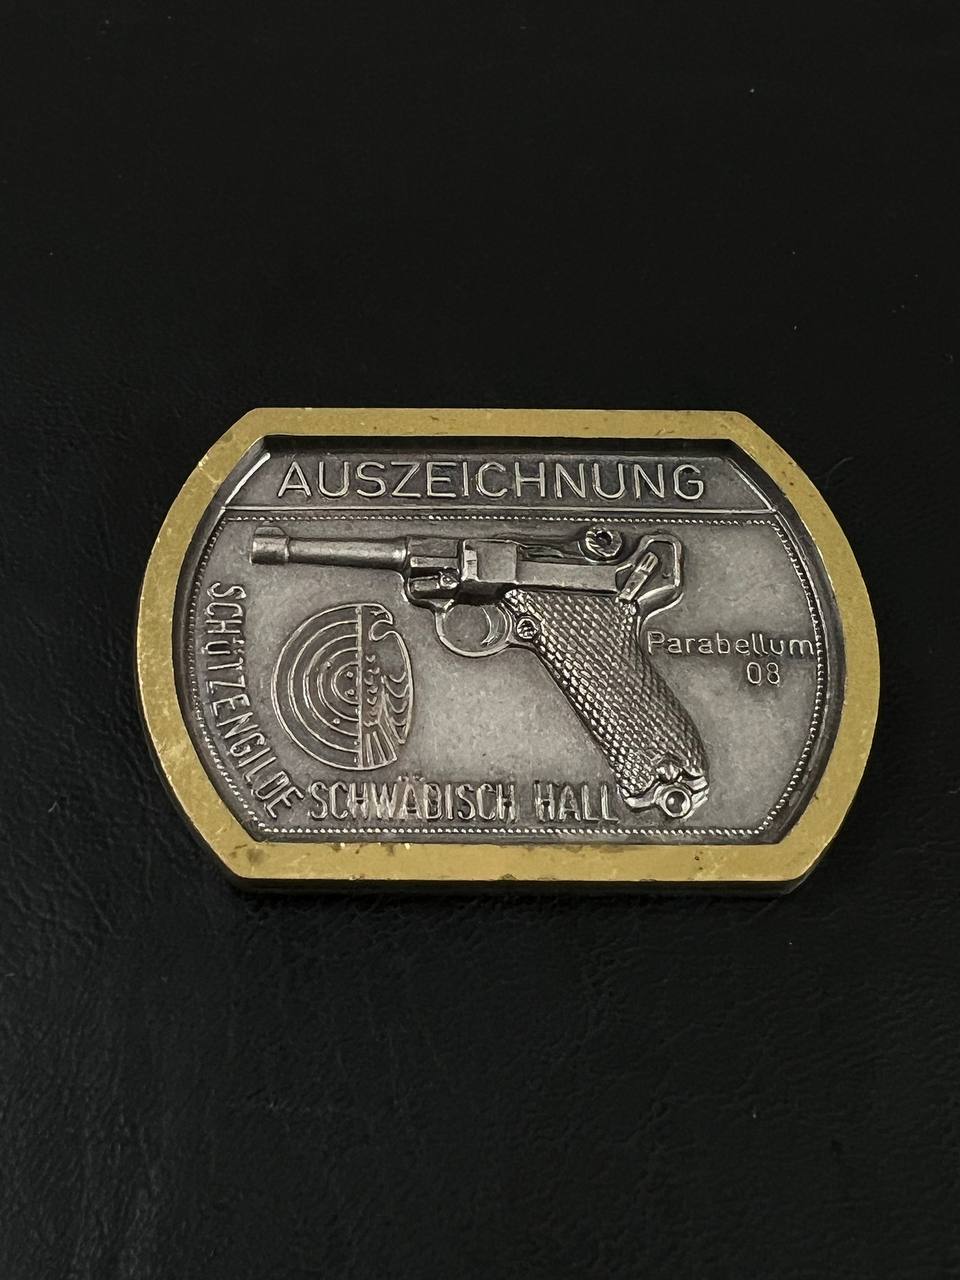 Значок за стрельбу из парабеллума. Германия, 2-я пол. XX в. От Алексея С.